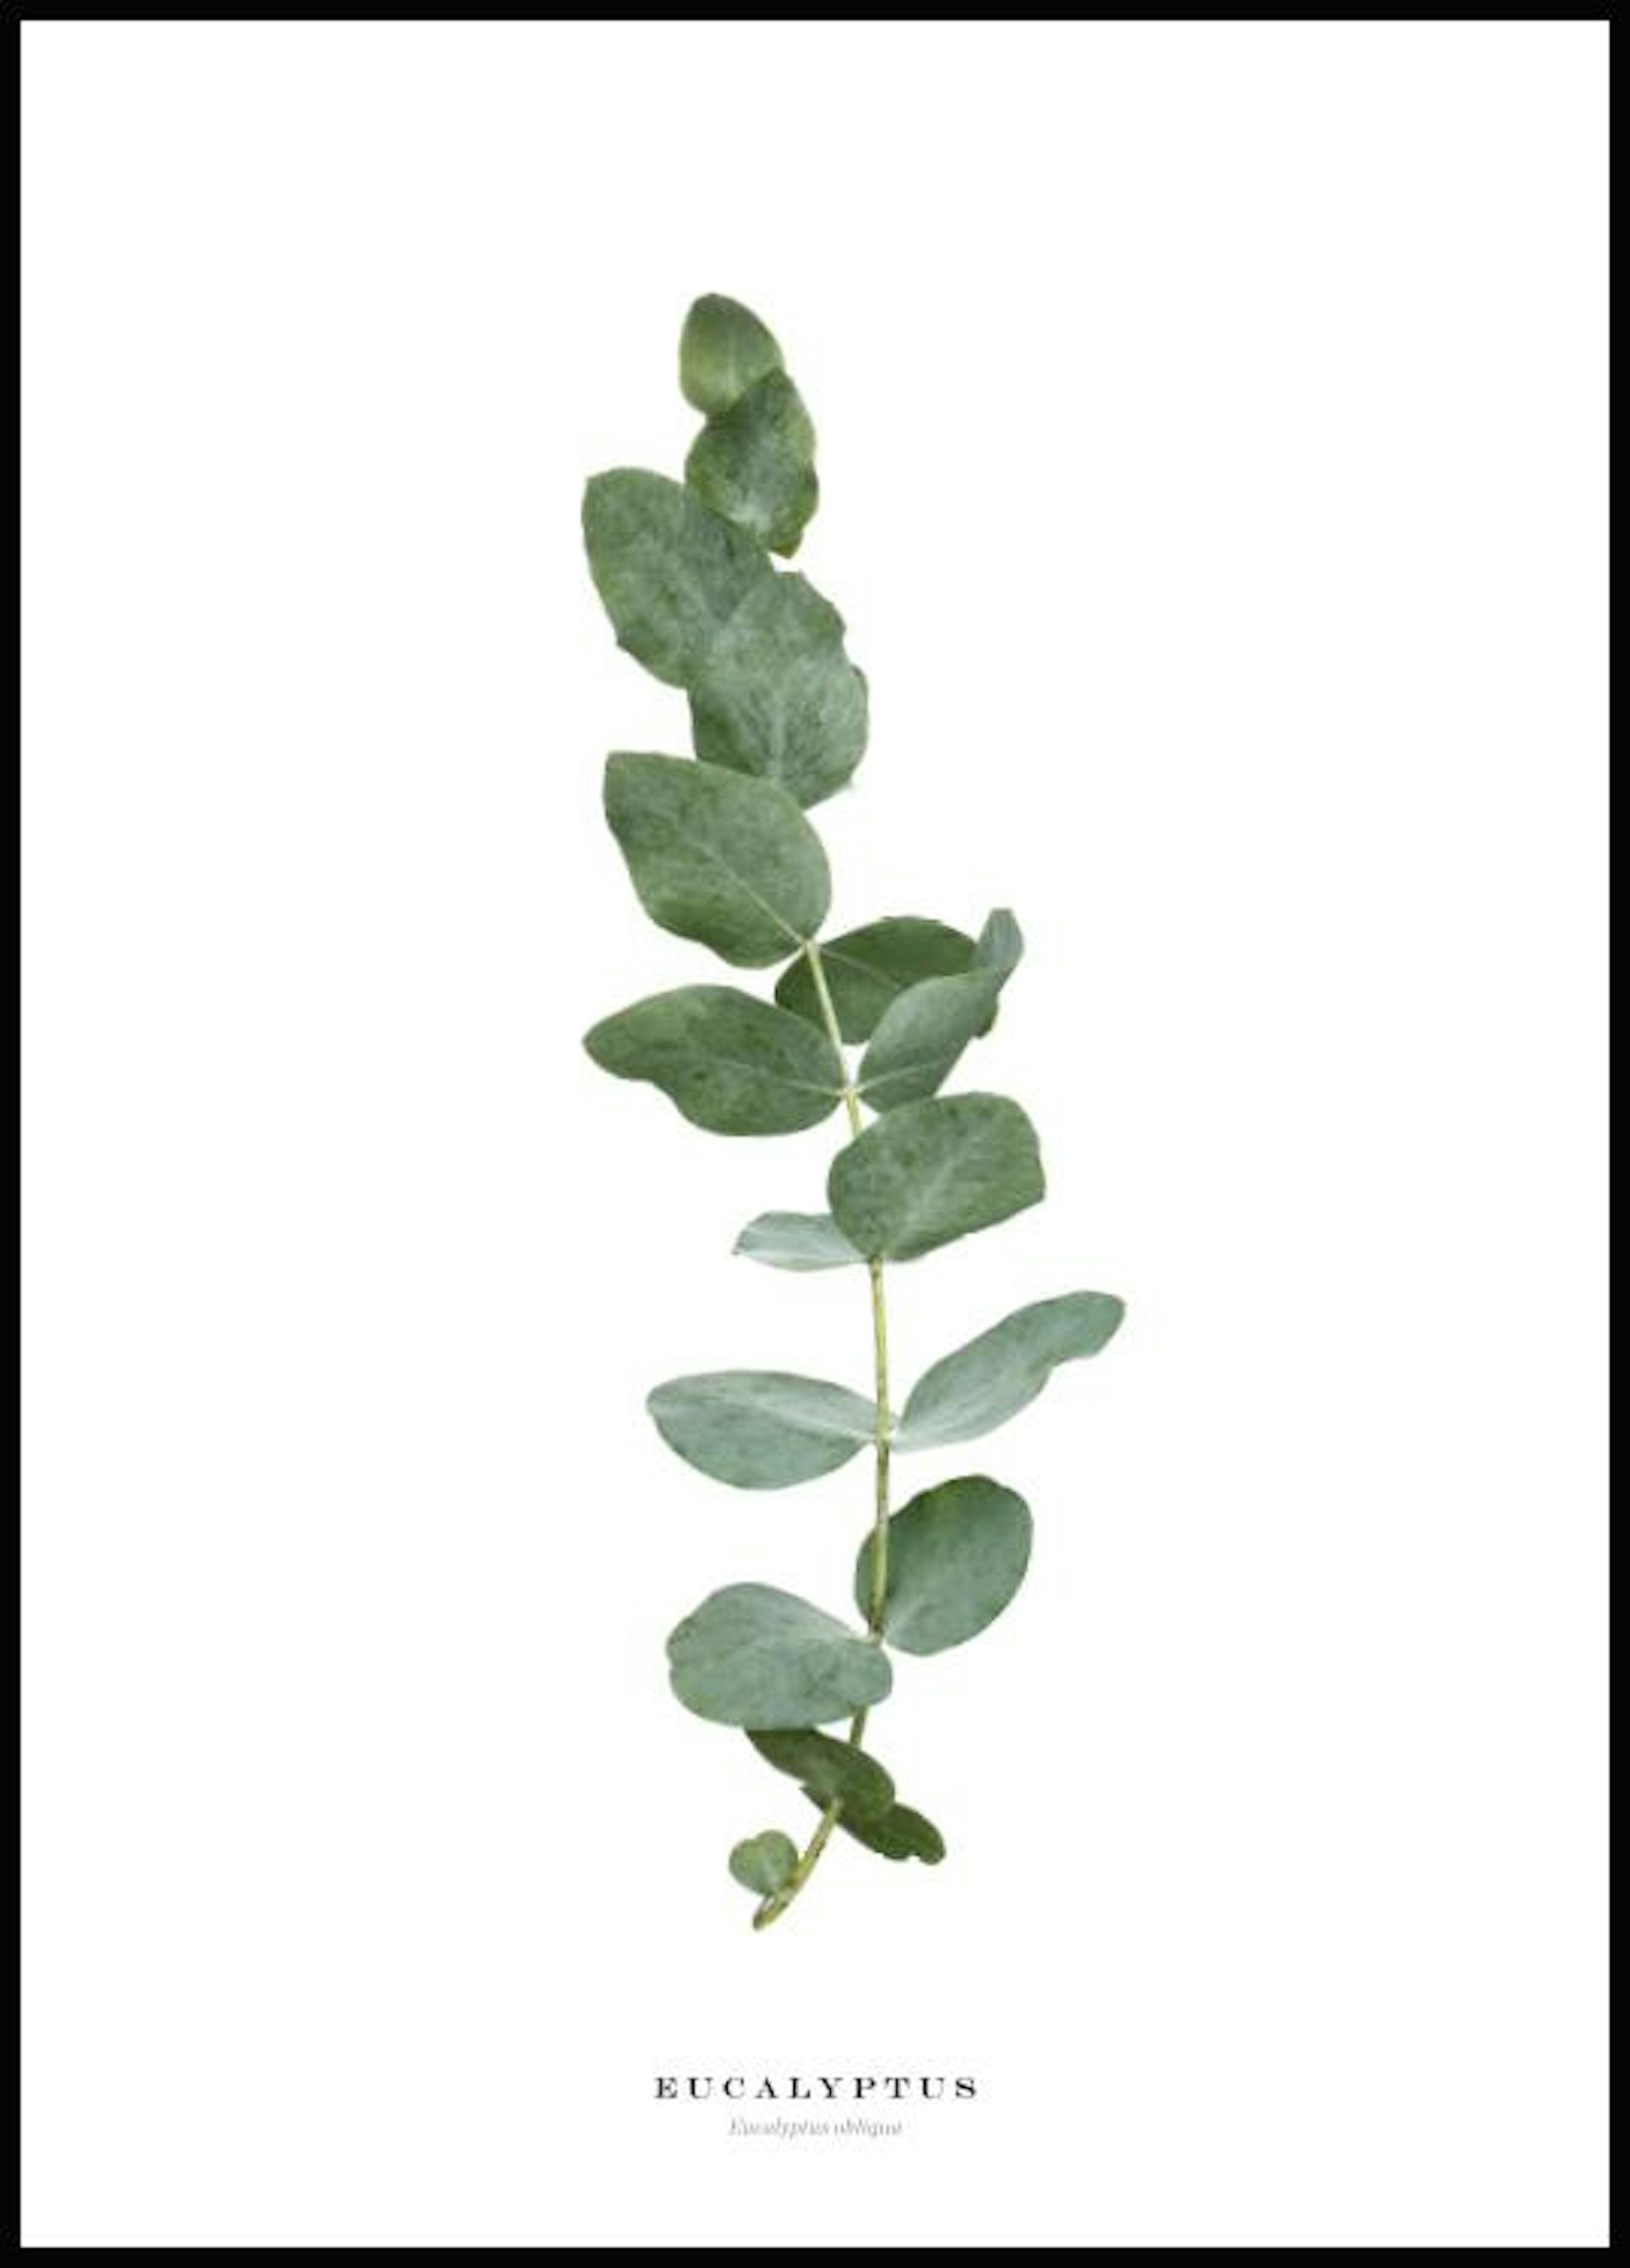 Eucalyptus Póster 0